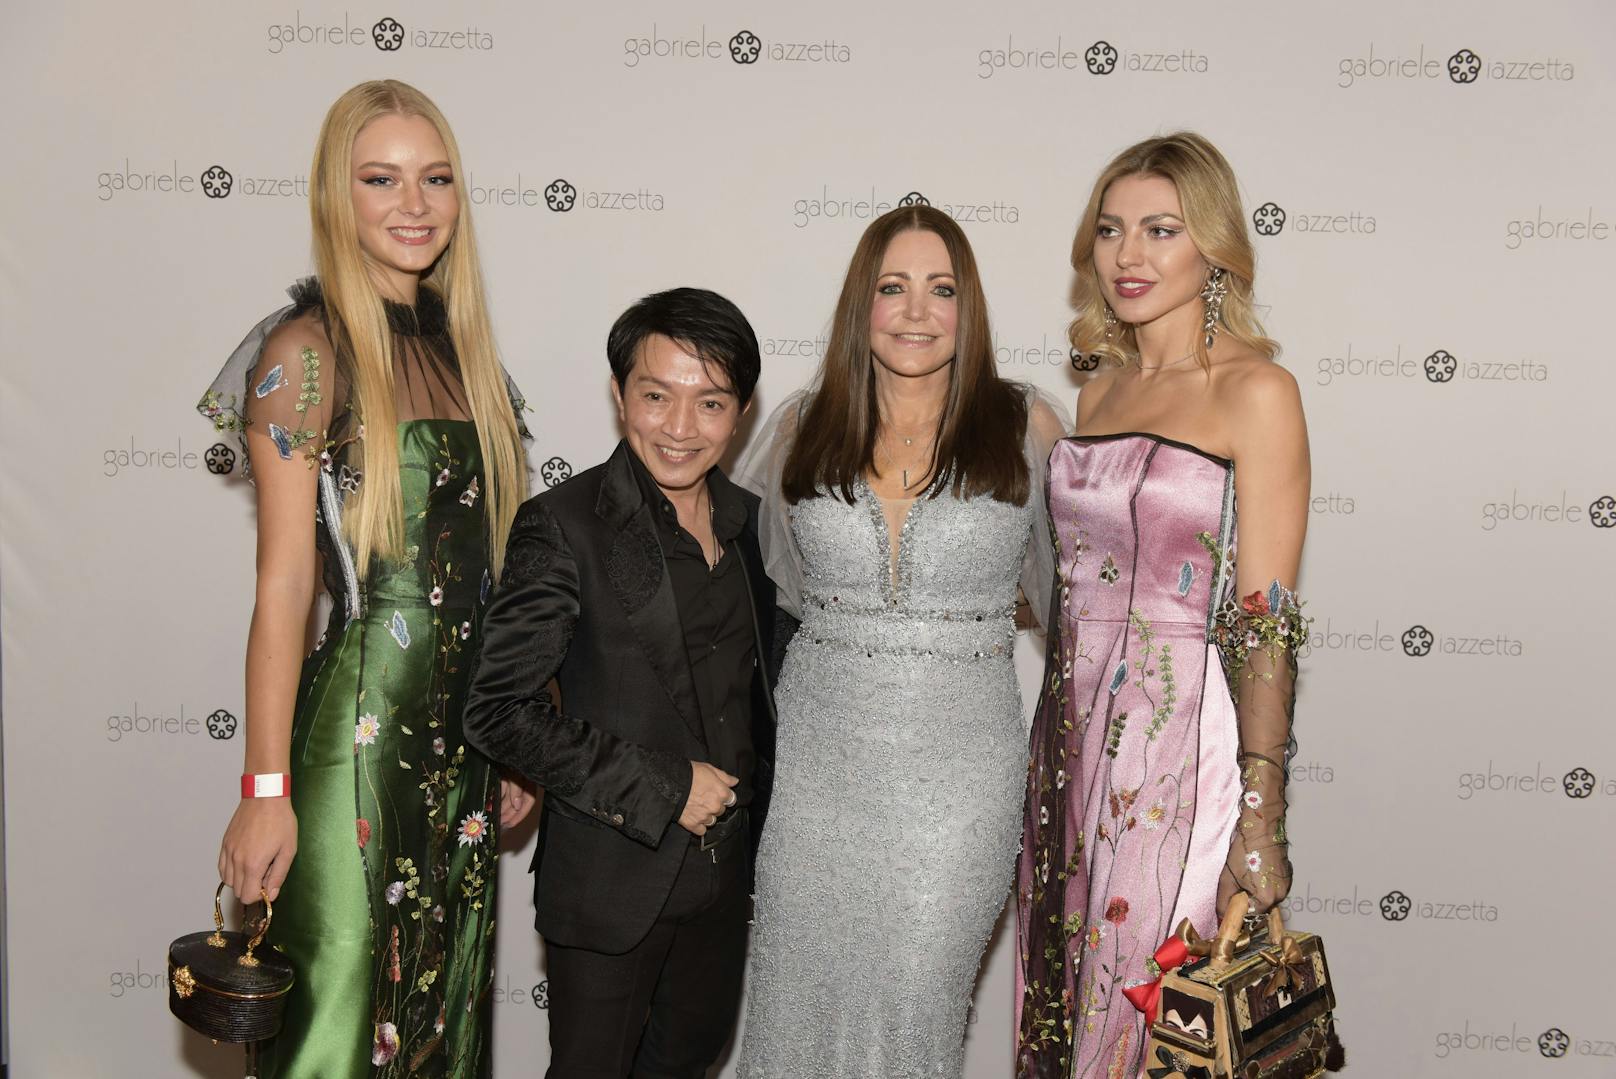 La Hong Nhut, Gabriele Iazzetta mit den Models des Abends 